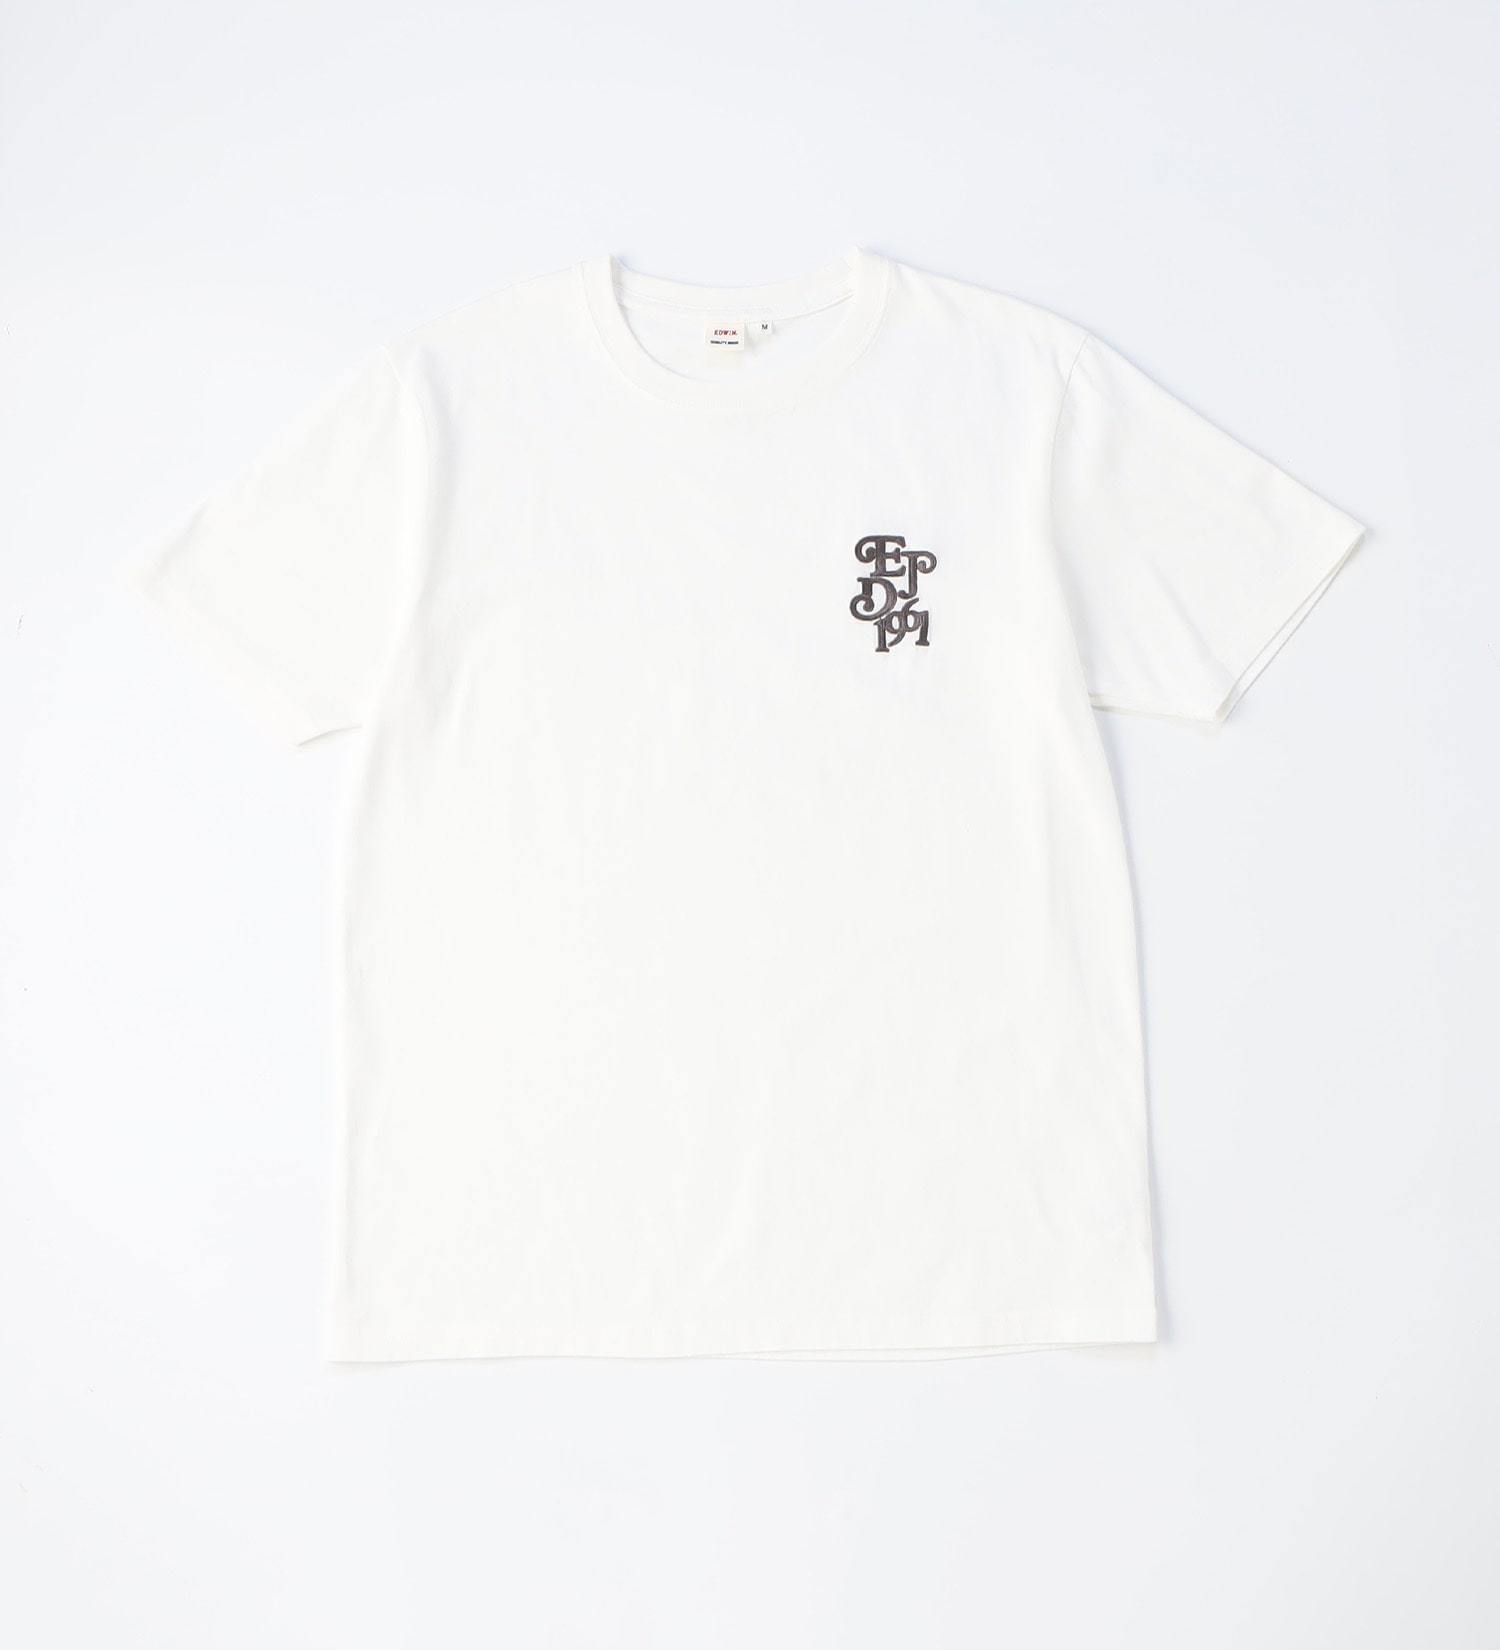 【BLACKFRIDAY】ロゴ エンブロイダリーTシャツ 半袖【アウトレット店舗・WEB限定】